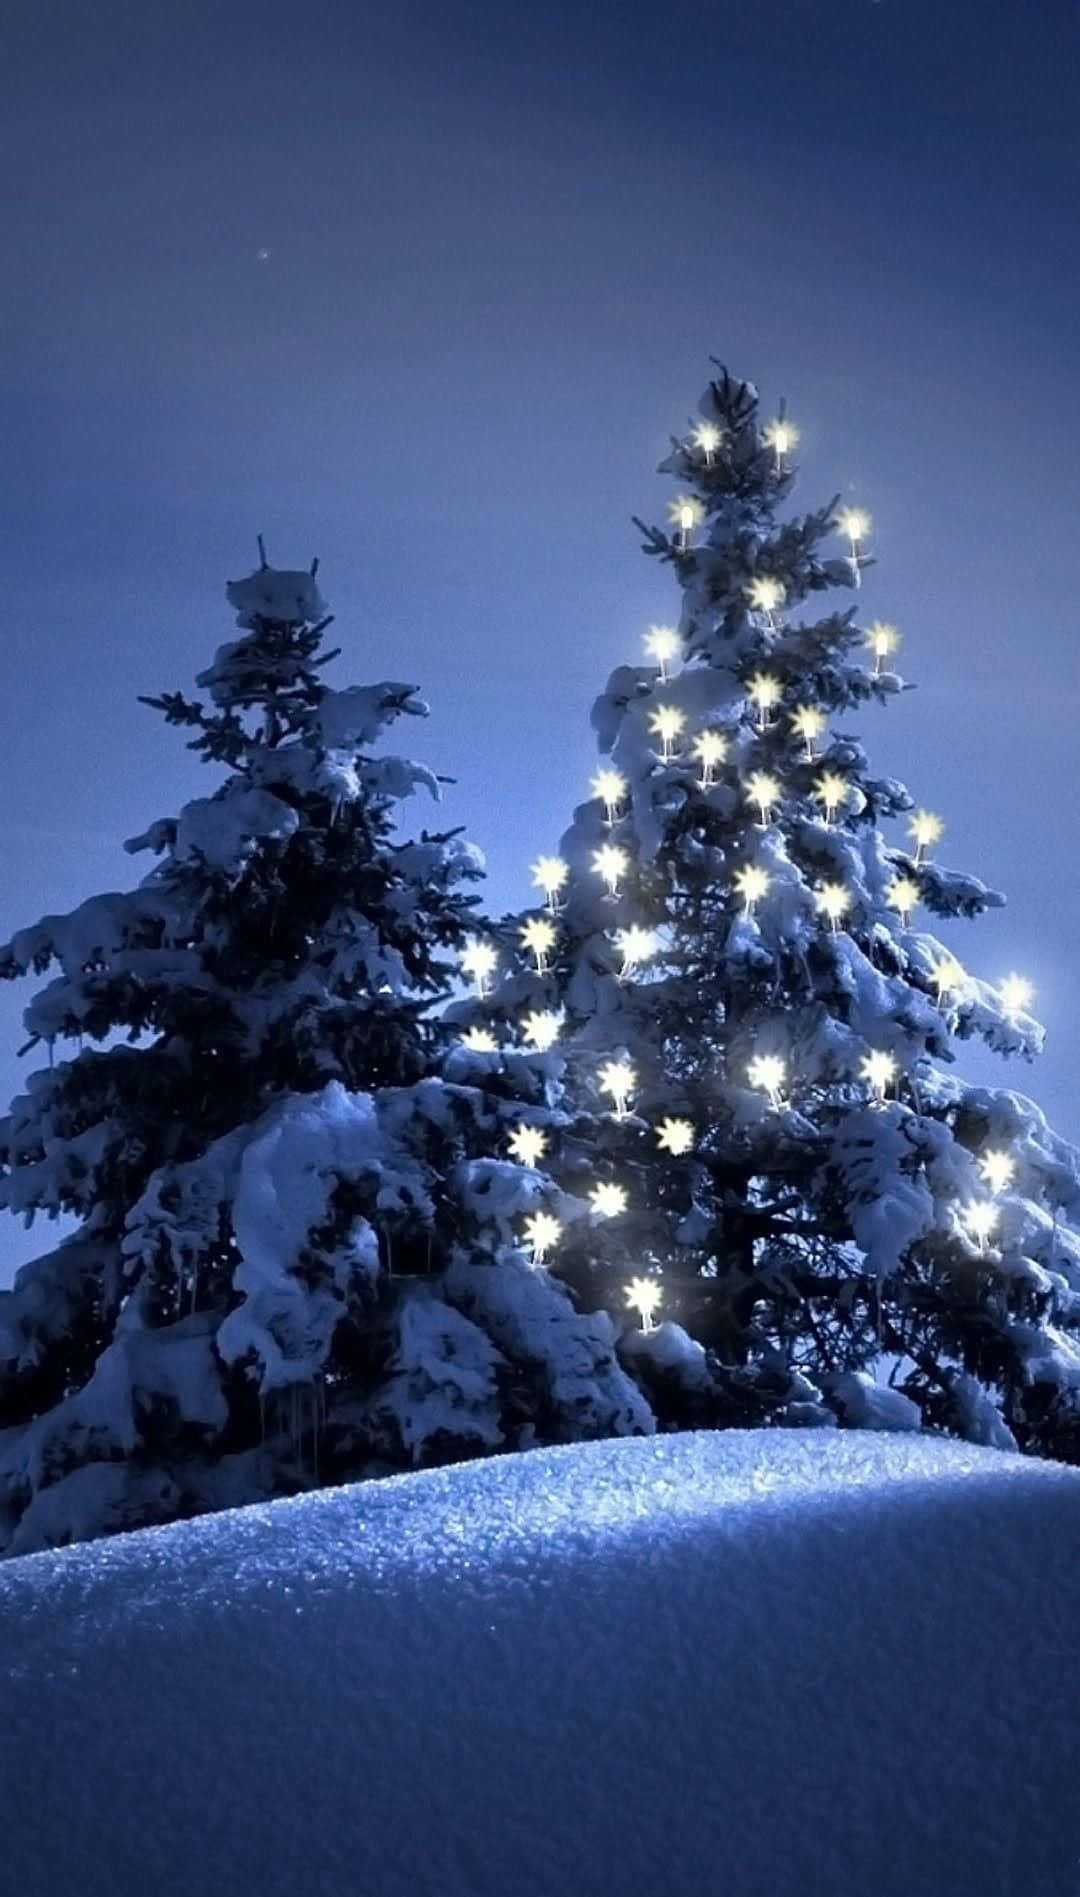 Umcenário De Inverno Com Árvores Cobertas De Neve E Luzes. Papel de Parede